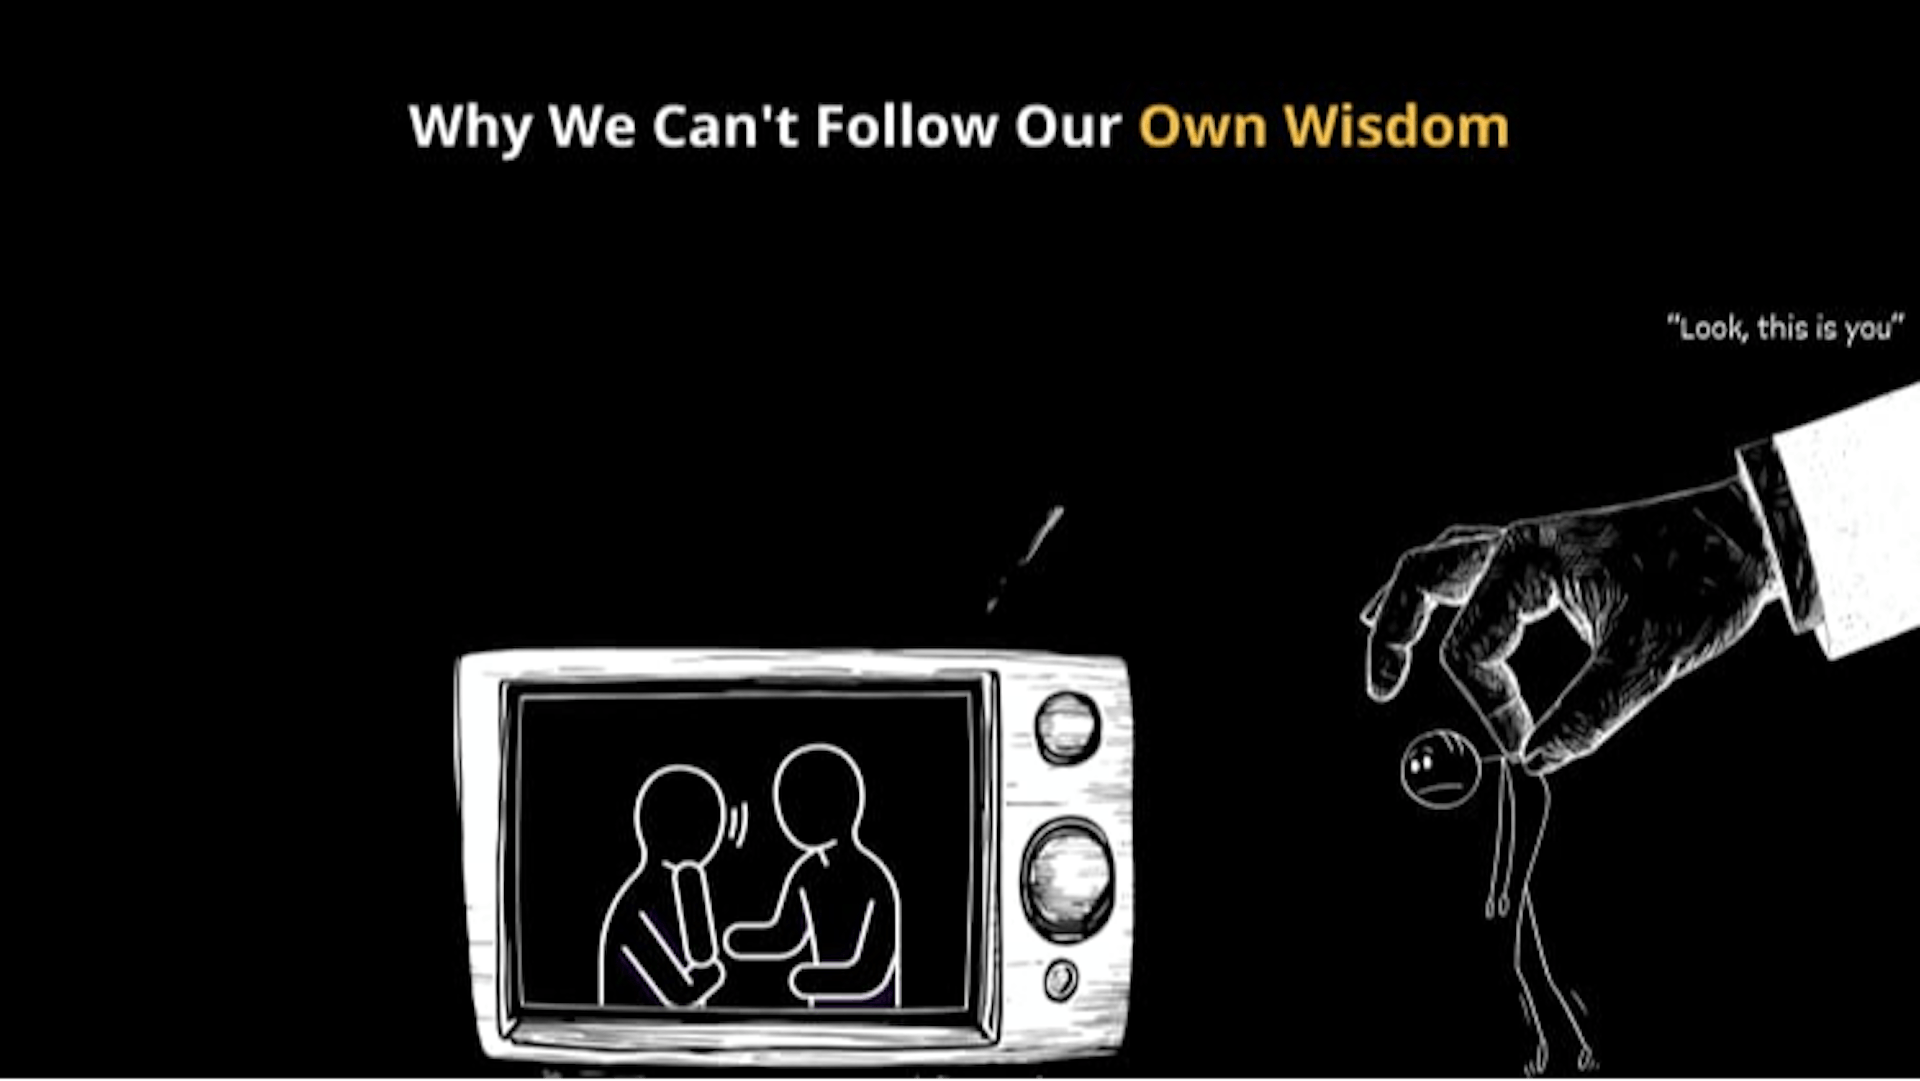 featured image - O paradoxo do conselho: por que não podemos seguir nossa própria sabedoria